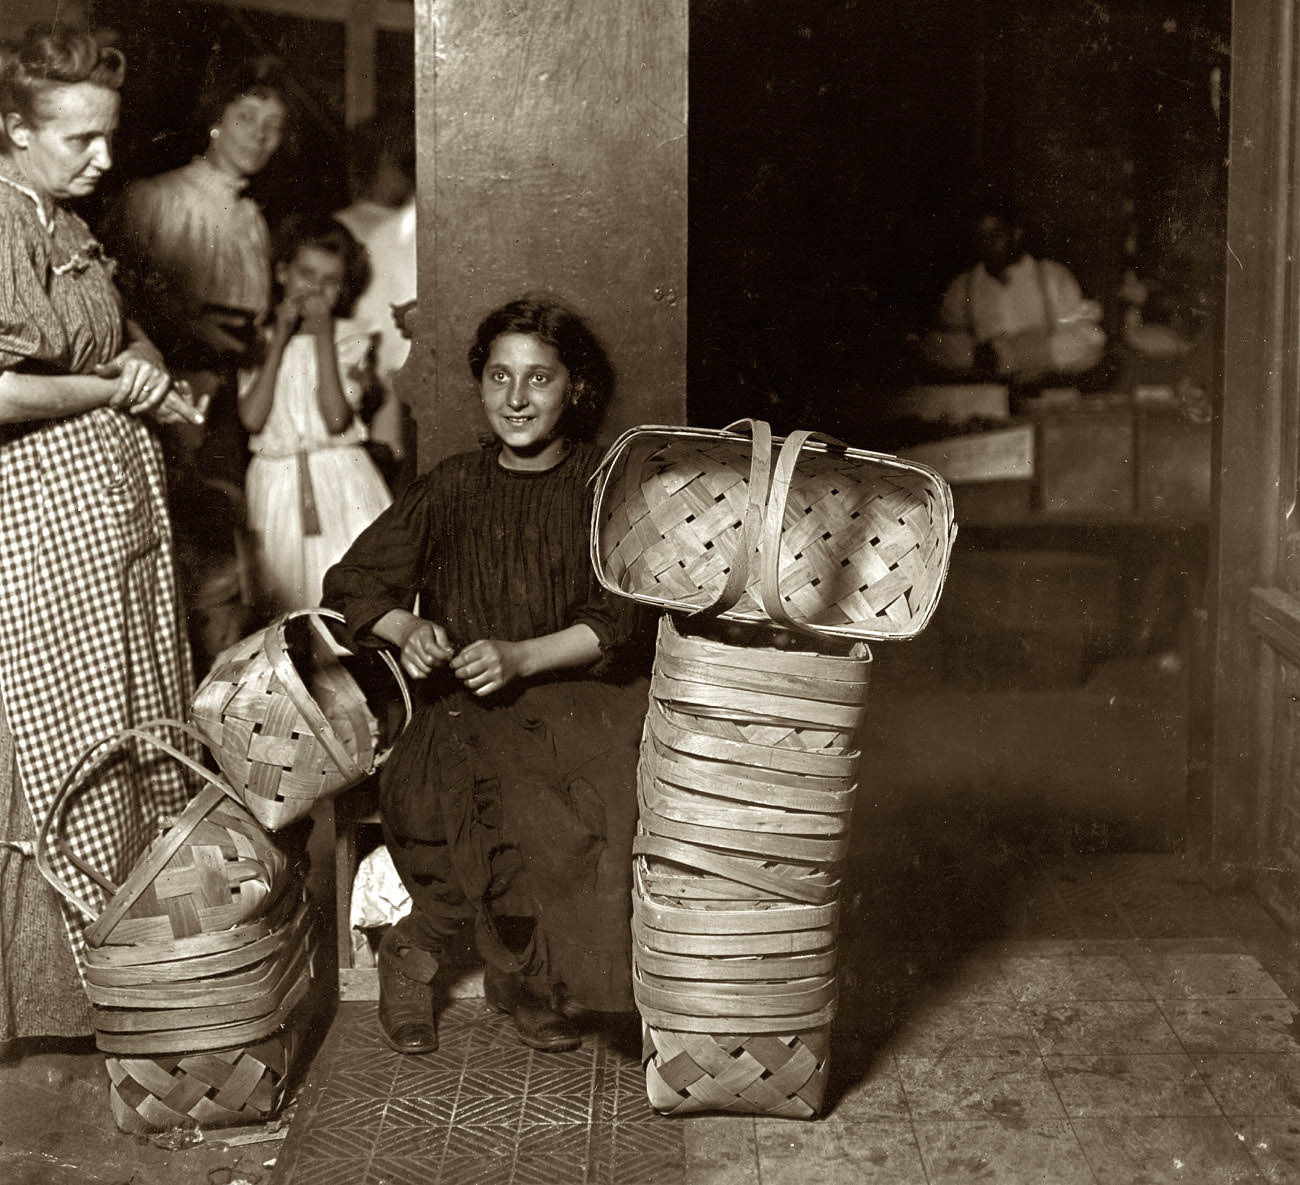 Lena Lochiavo, 11 years old, Basket Seller, Sixth Street Market, Cincinnati, August 1908